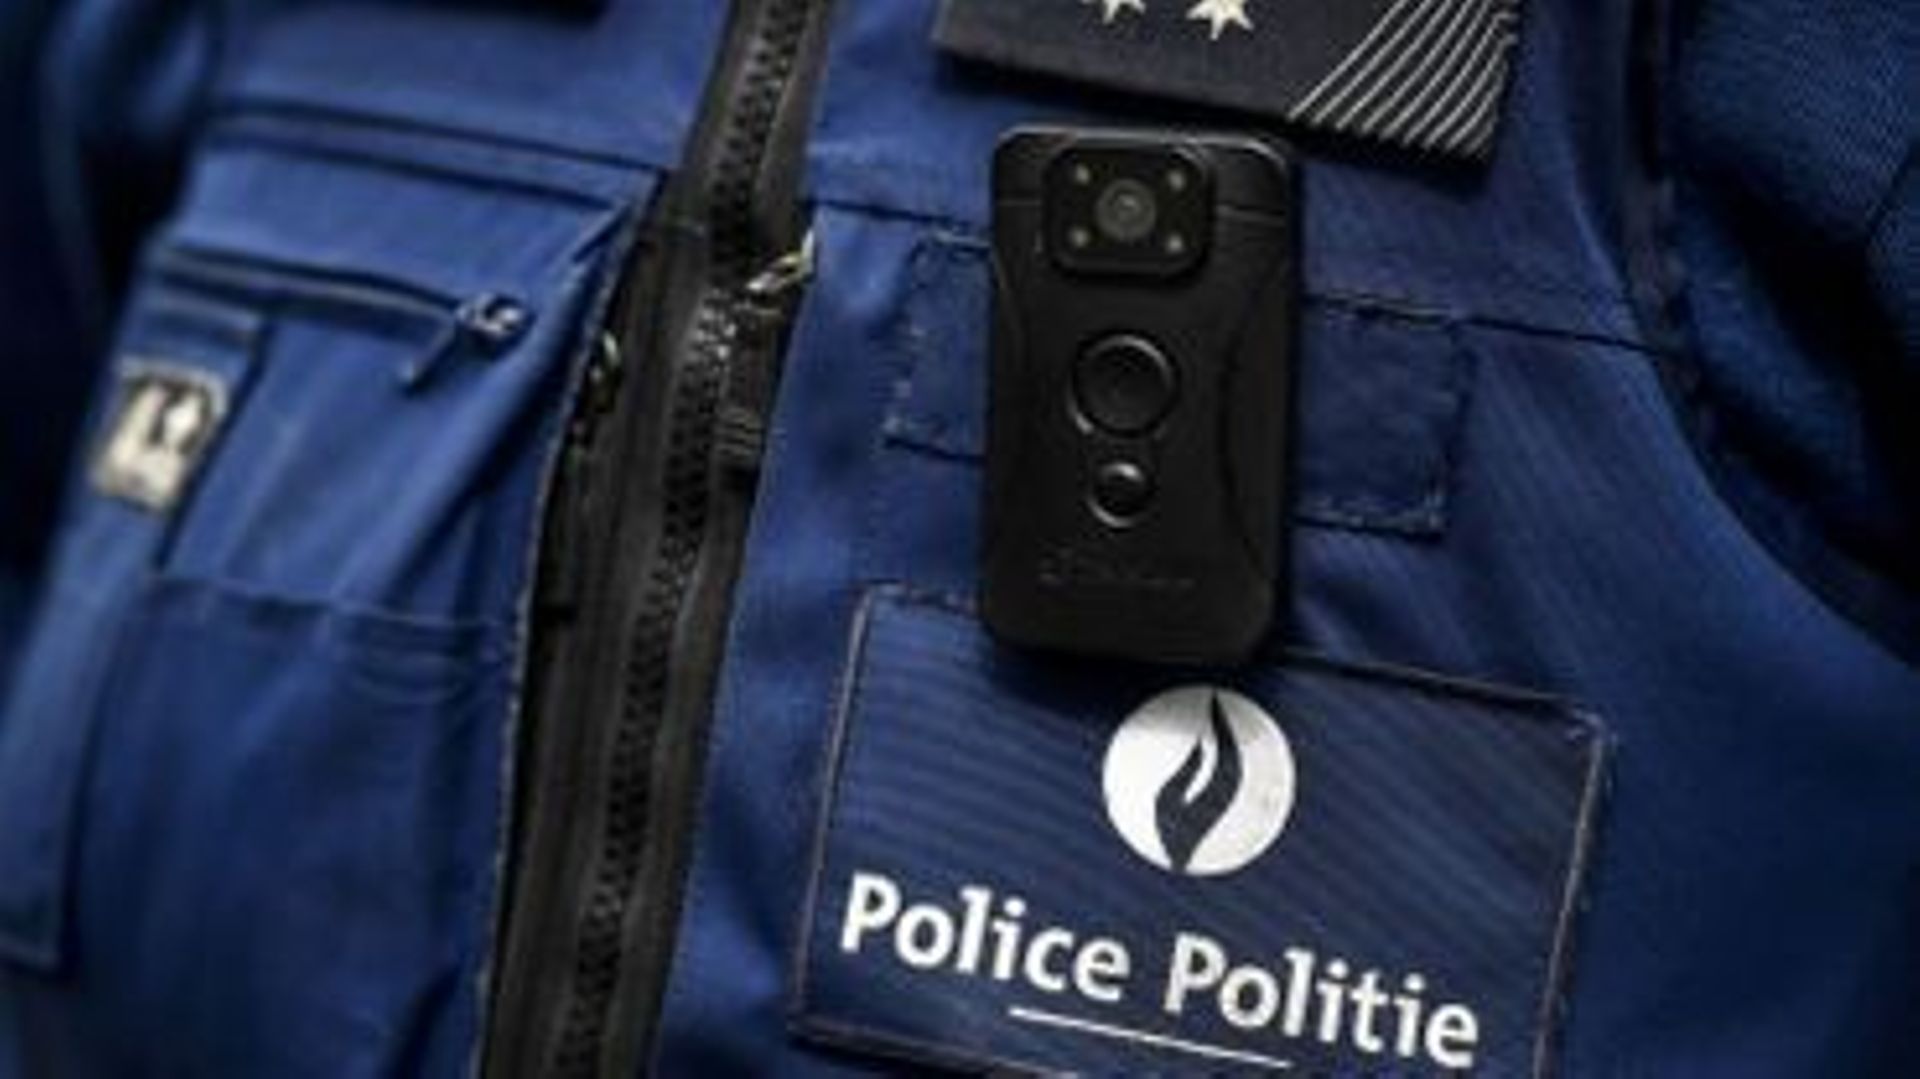 La police de Namur fait l'acquisition de 90 bodycams